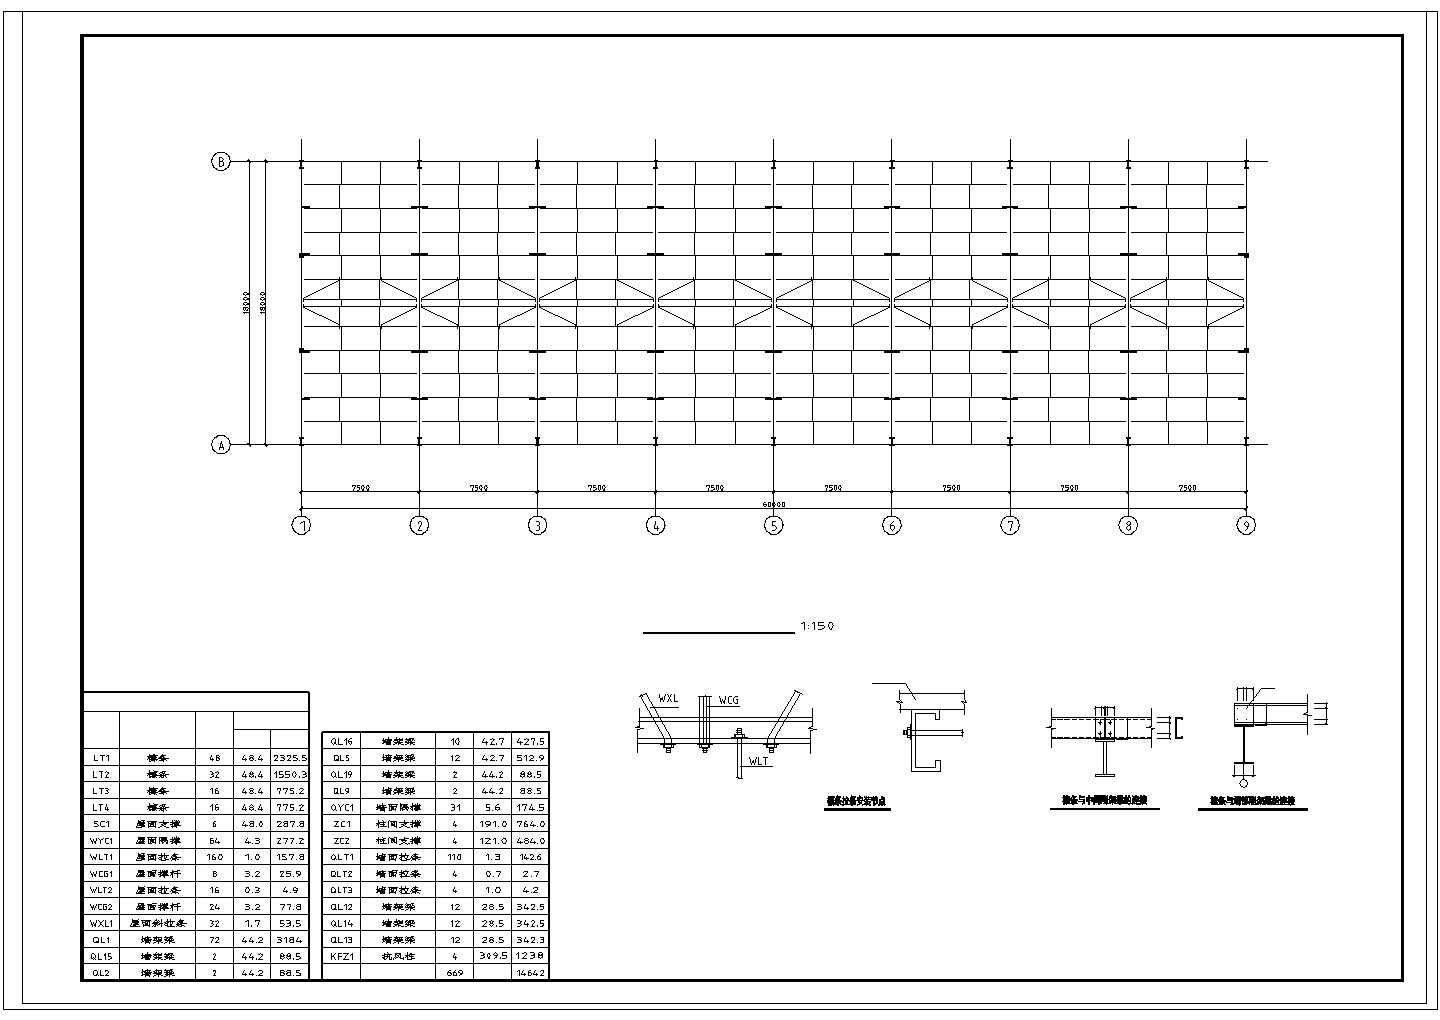 厂房设计_60x18m 单层钢架结构厂房cad结施图